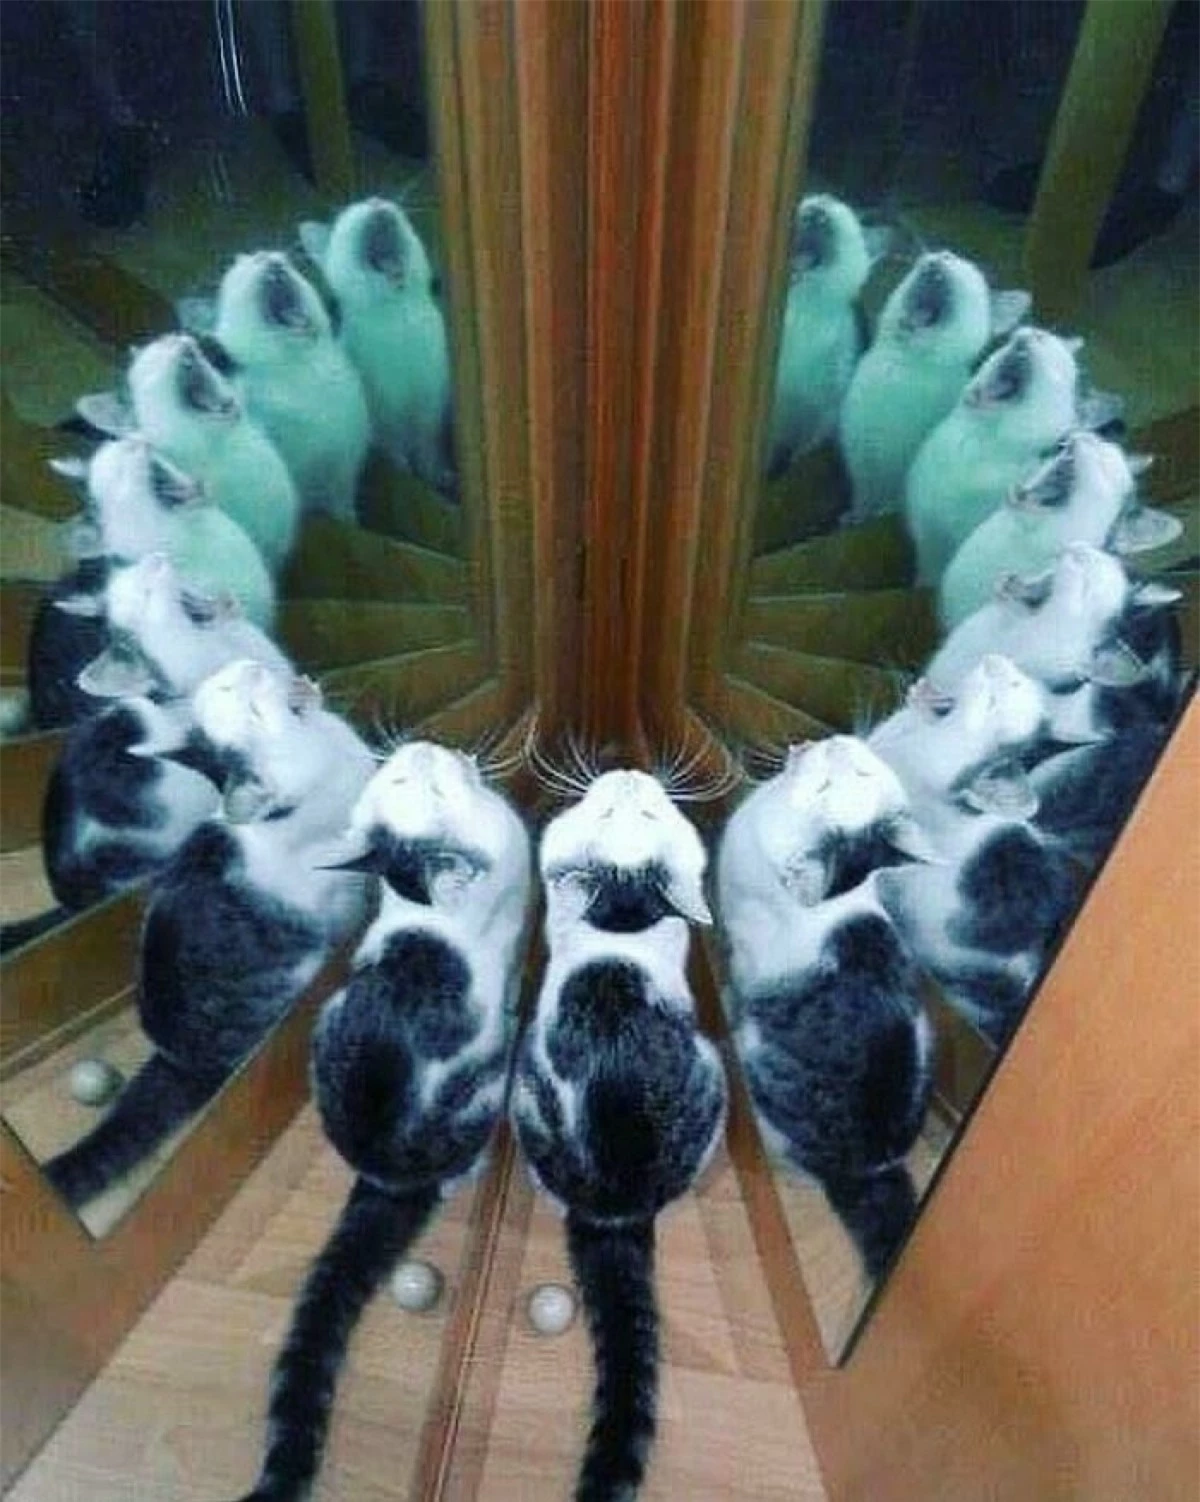 Hình ảnh hack não khiến người xem khó phân biệt đâu là mèo thật và đâu là hình phản chiếu trong gương.